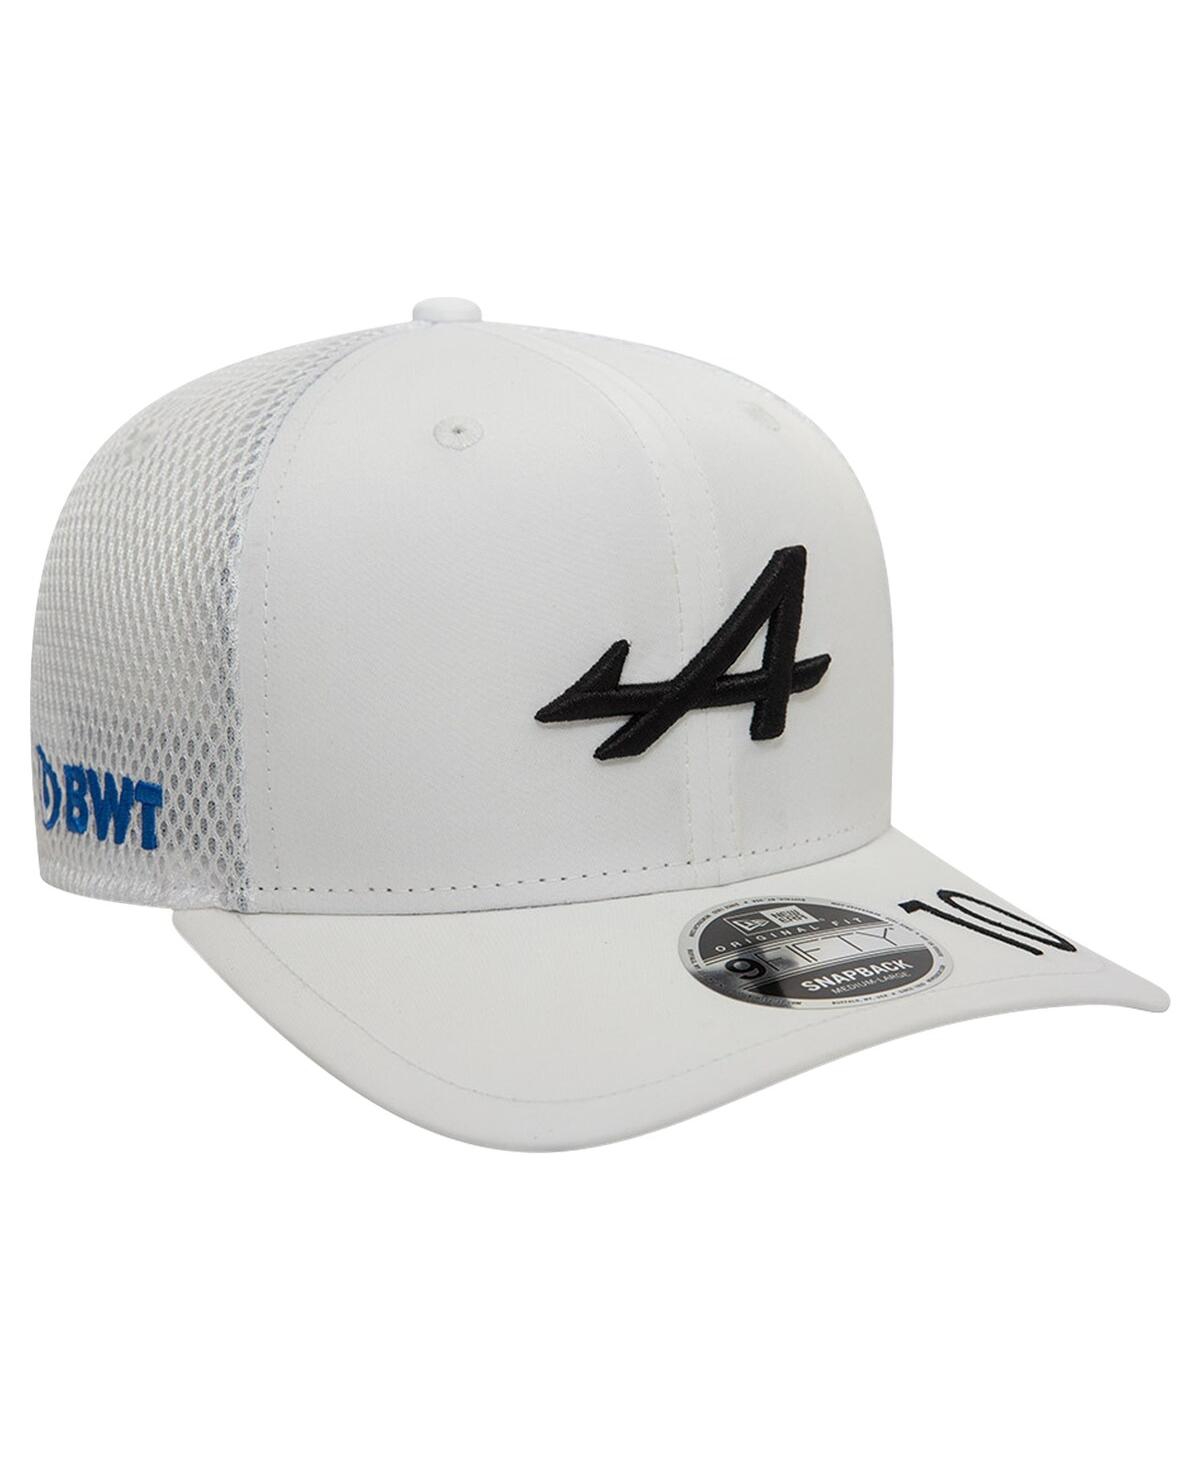 Shop New Era Men's  Pierre Gasly White Alpine Team Driver 9fifty Trucker Adjustable Hat